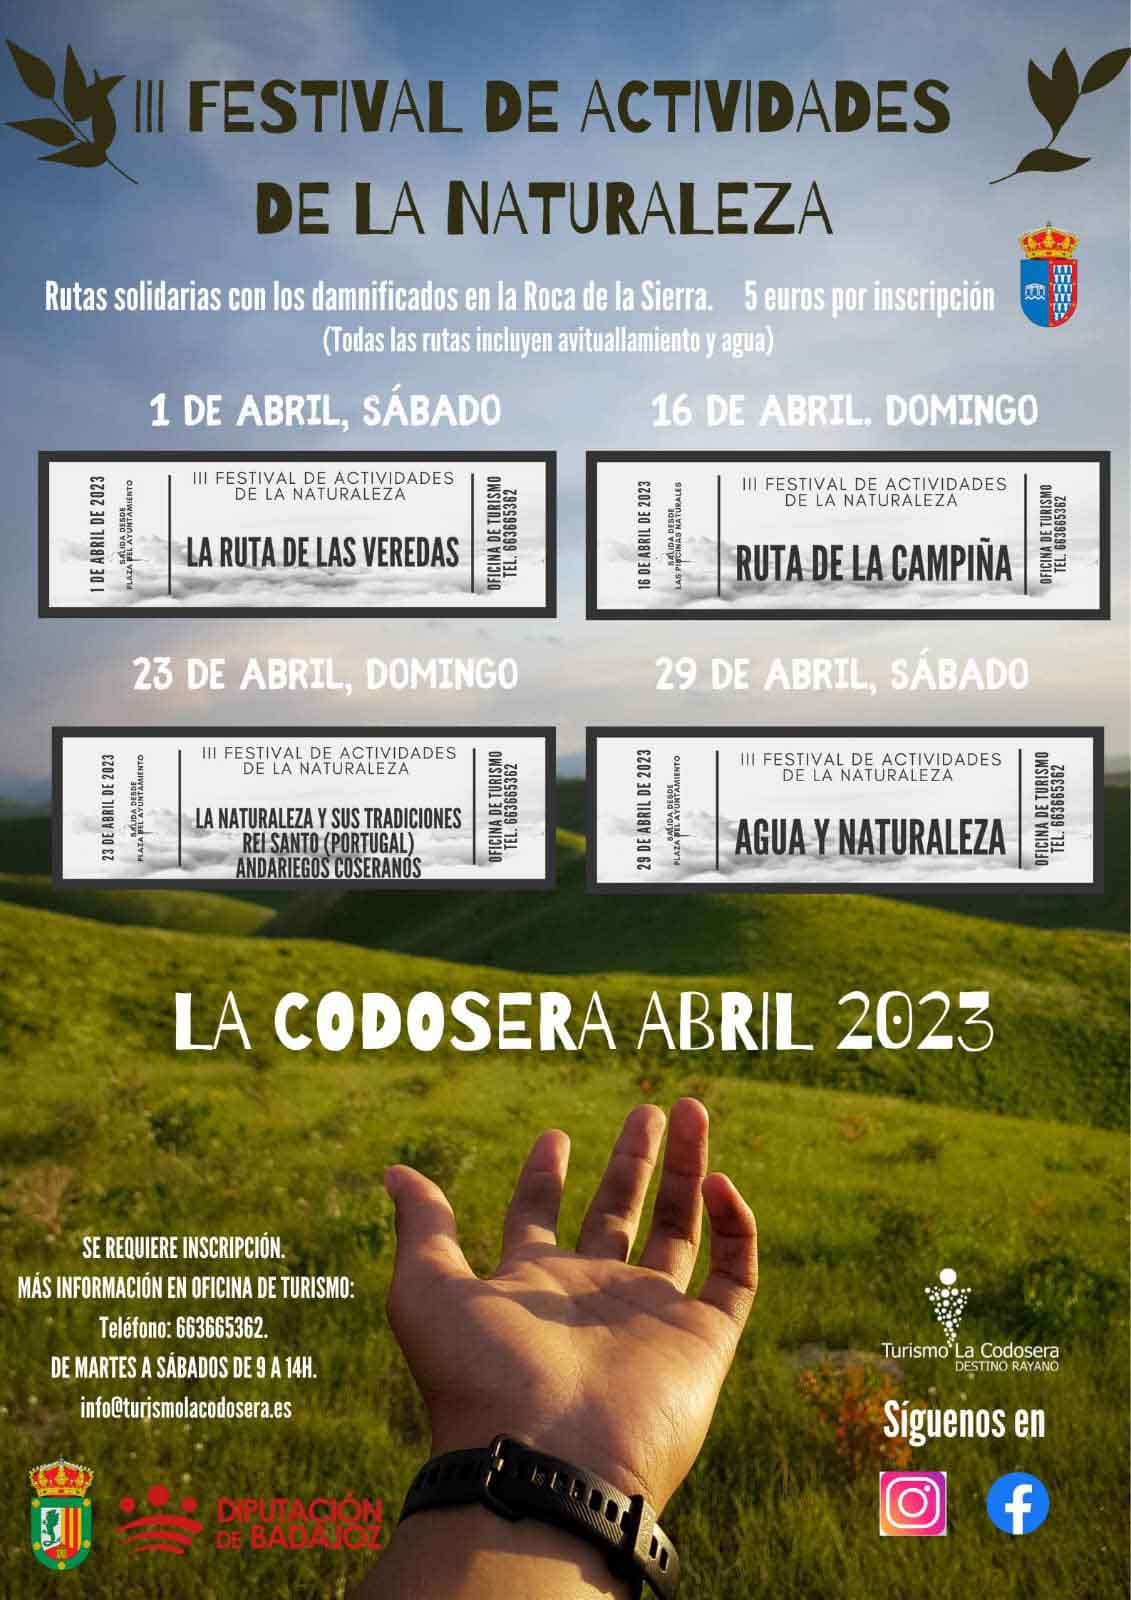 Festival de Actividades de la Naturaleza 2023 en La Codosera